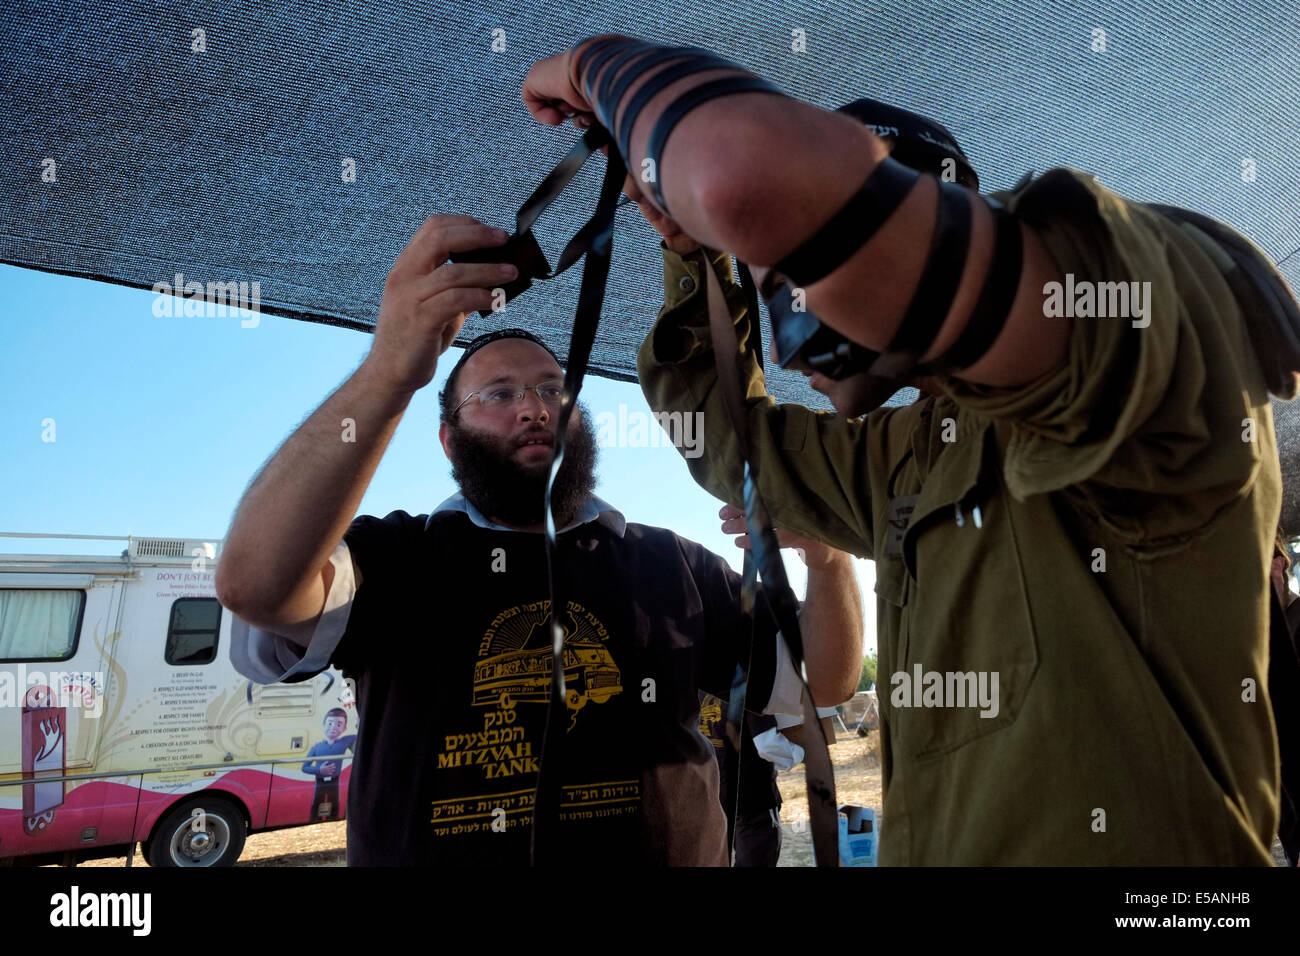 Ein Mitglied der religiösen Bewegung Chabads hilft einem israelischen Soldaten, ein traditionelles jüdisches Tfilin zu tragen, wenn er in einem "Mitzva-Panzer" ankommt, das von den orthodoxen jüdischen Praktizierenden des Hasidismus in Chabad-Lubavitch als tragbares "Bildungs- und Öffentlichkeitszentrum" und "Minisynagoge" in Israel verwendet wird Stockfoto